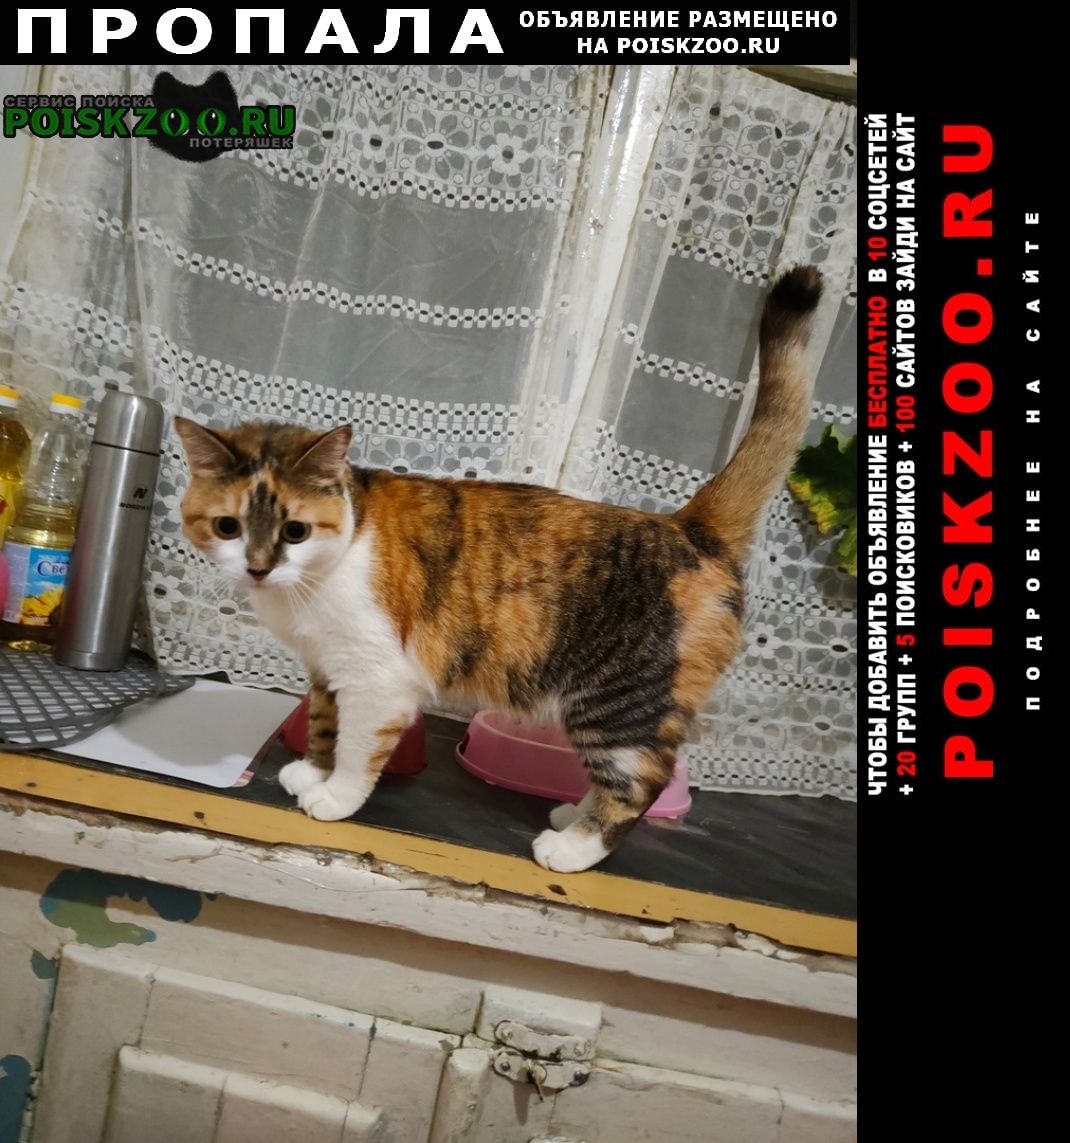 Пропала кошка в поселке горького, но могли увезти Хабаровск